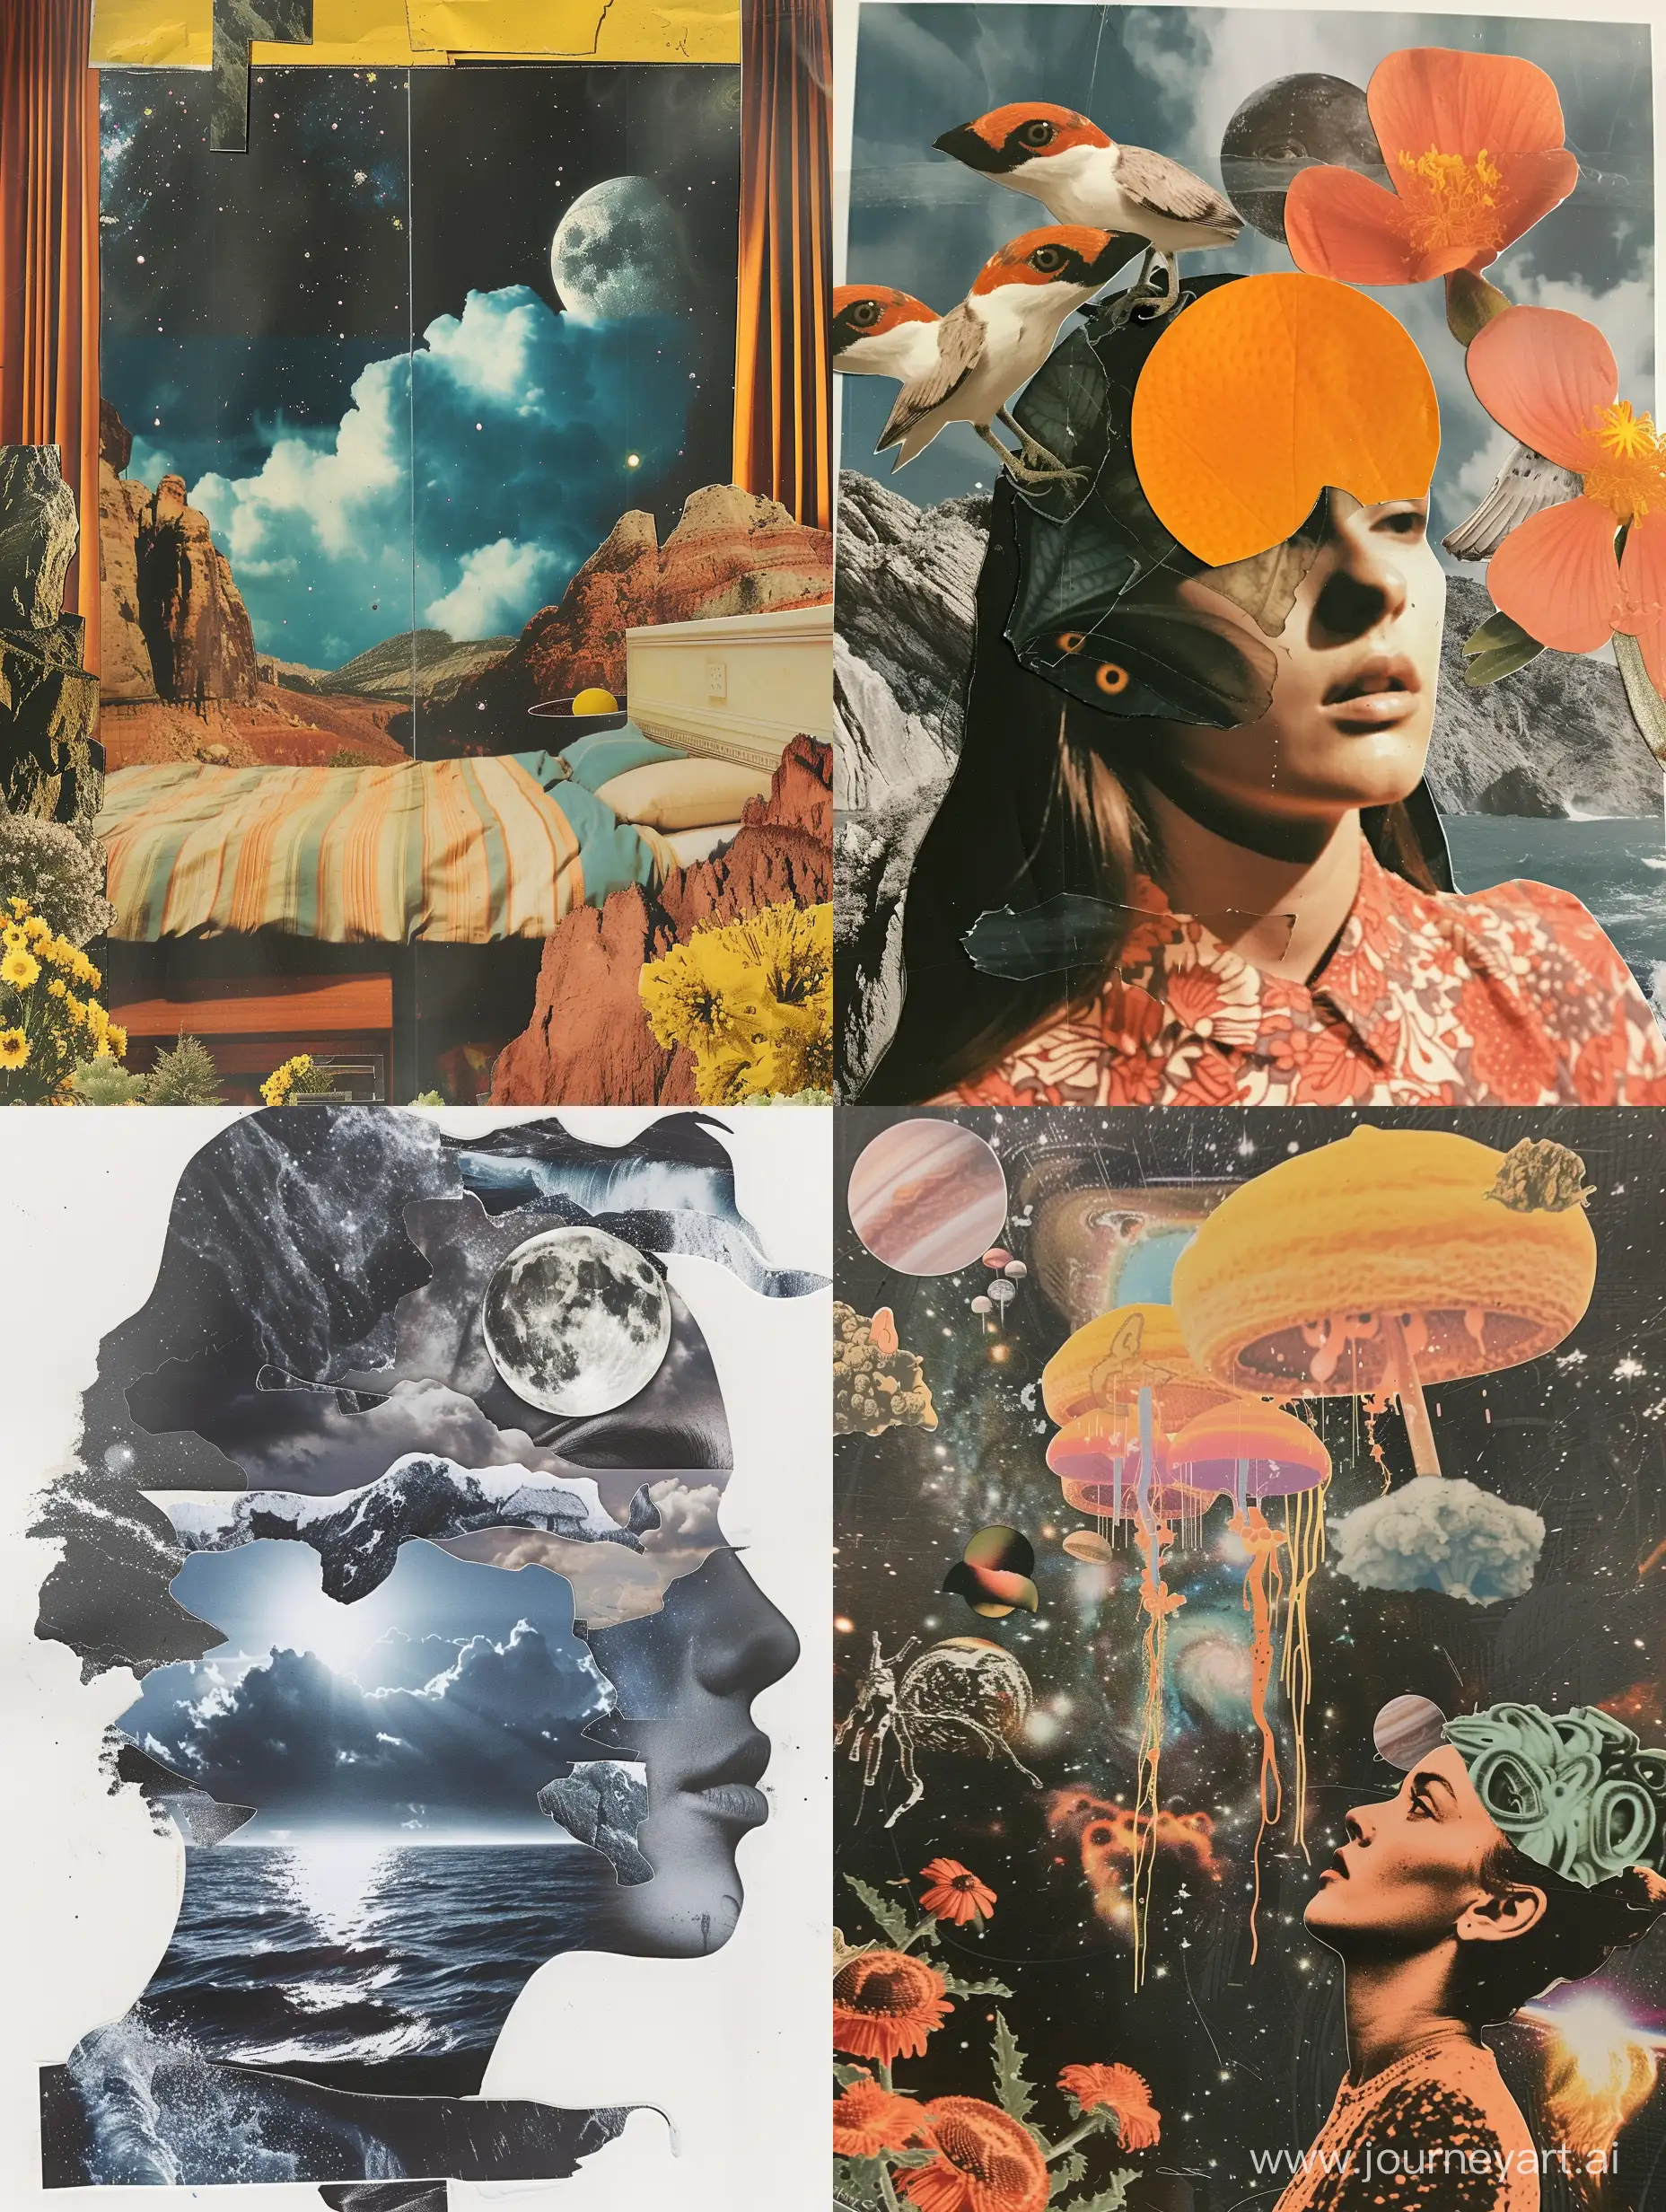 A dream collage